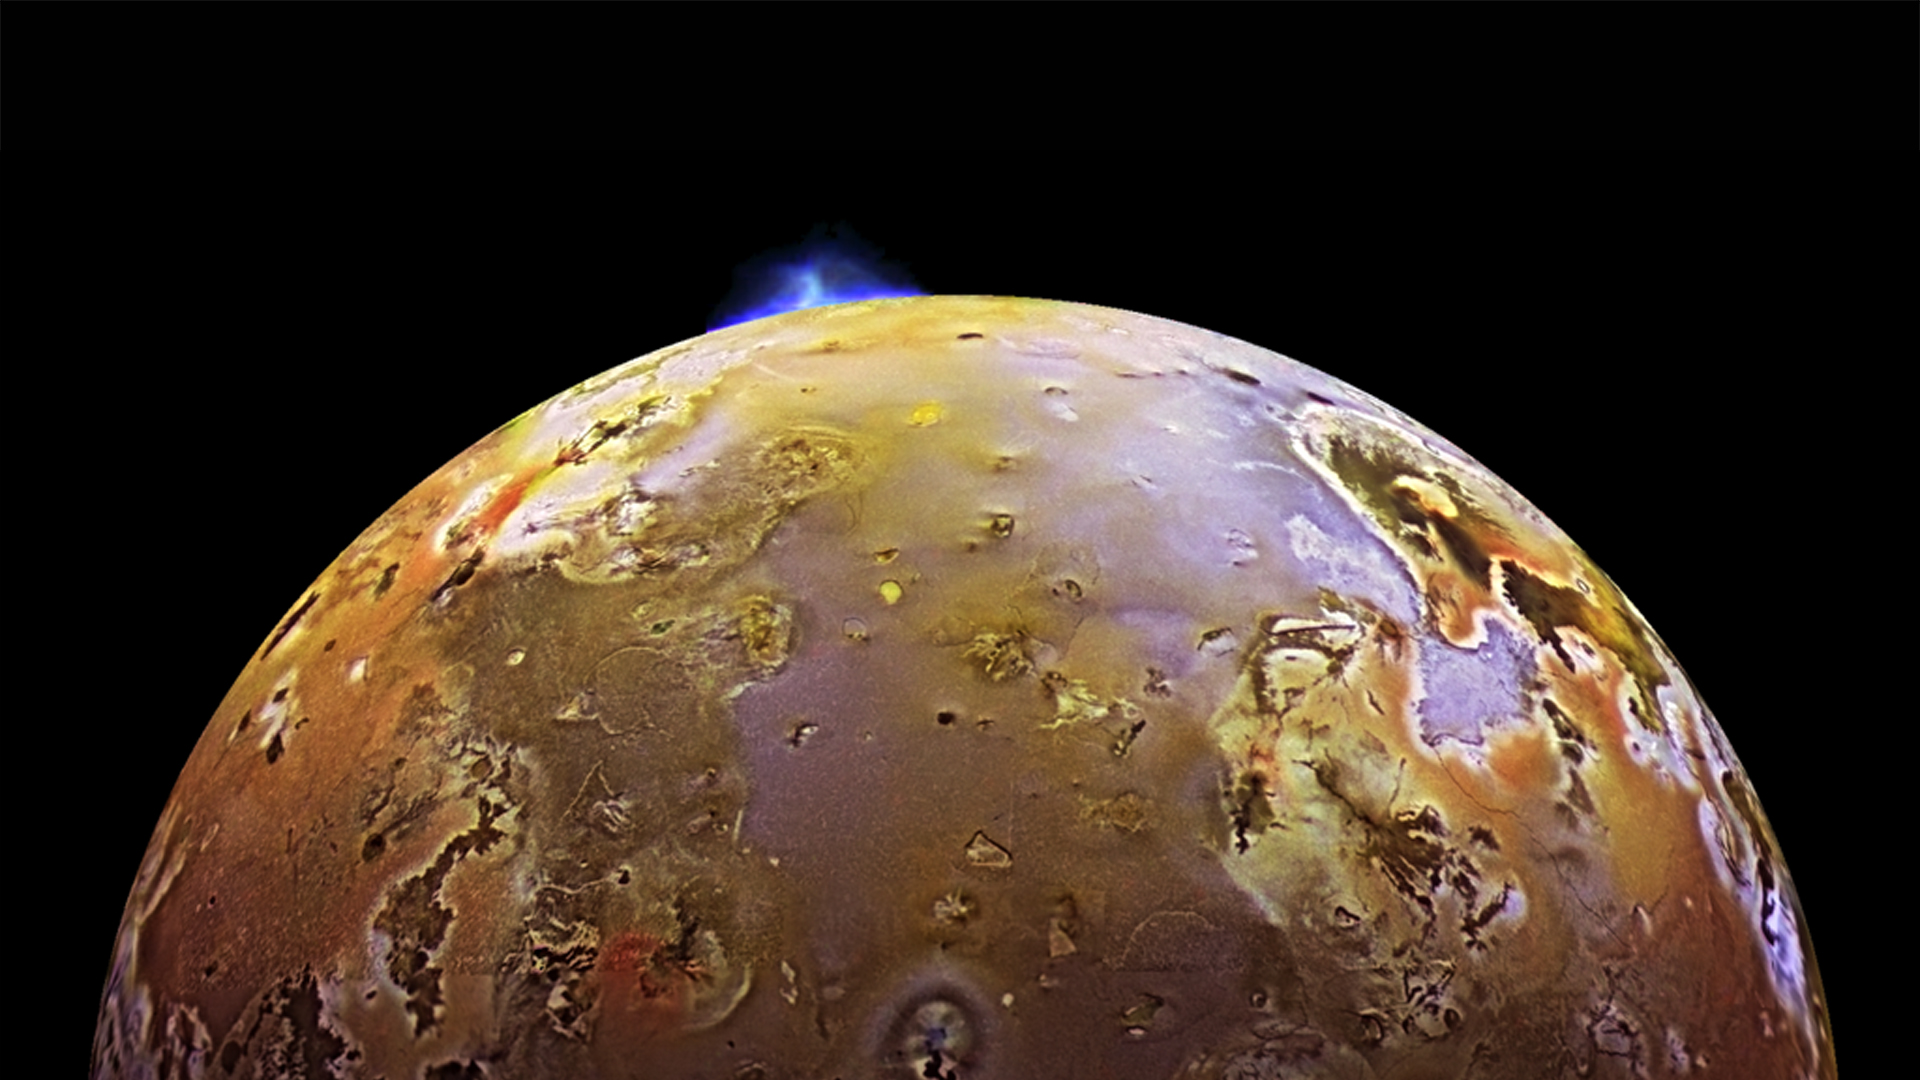 Giove: emissioni di onde radio registrate dal satellite Io